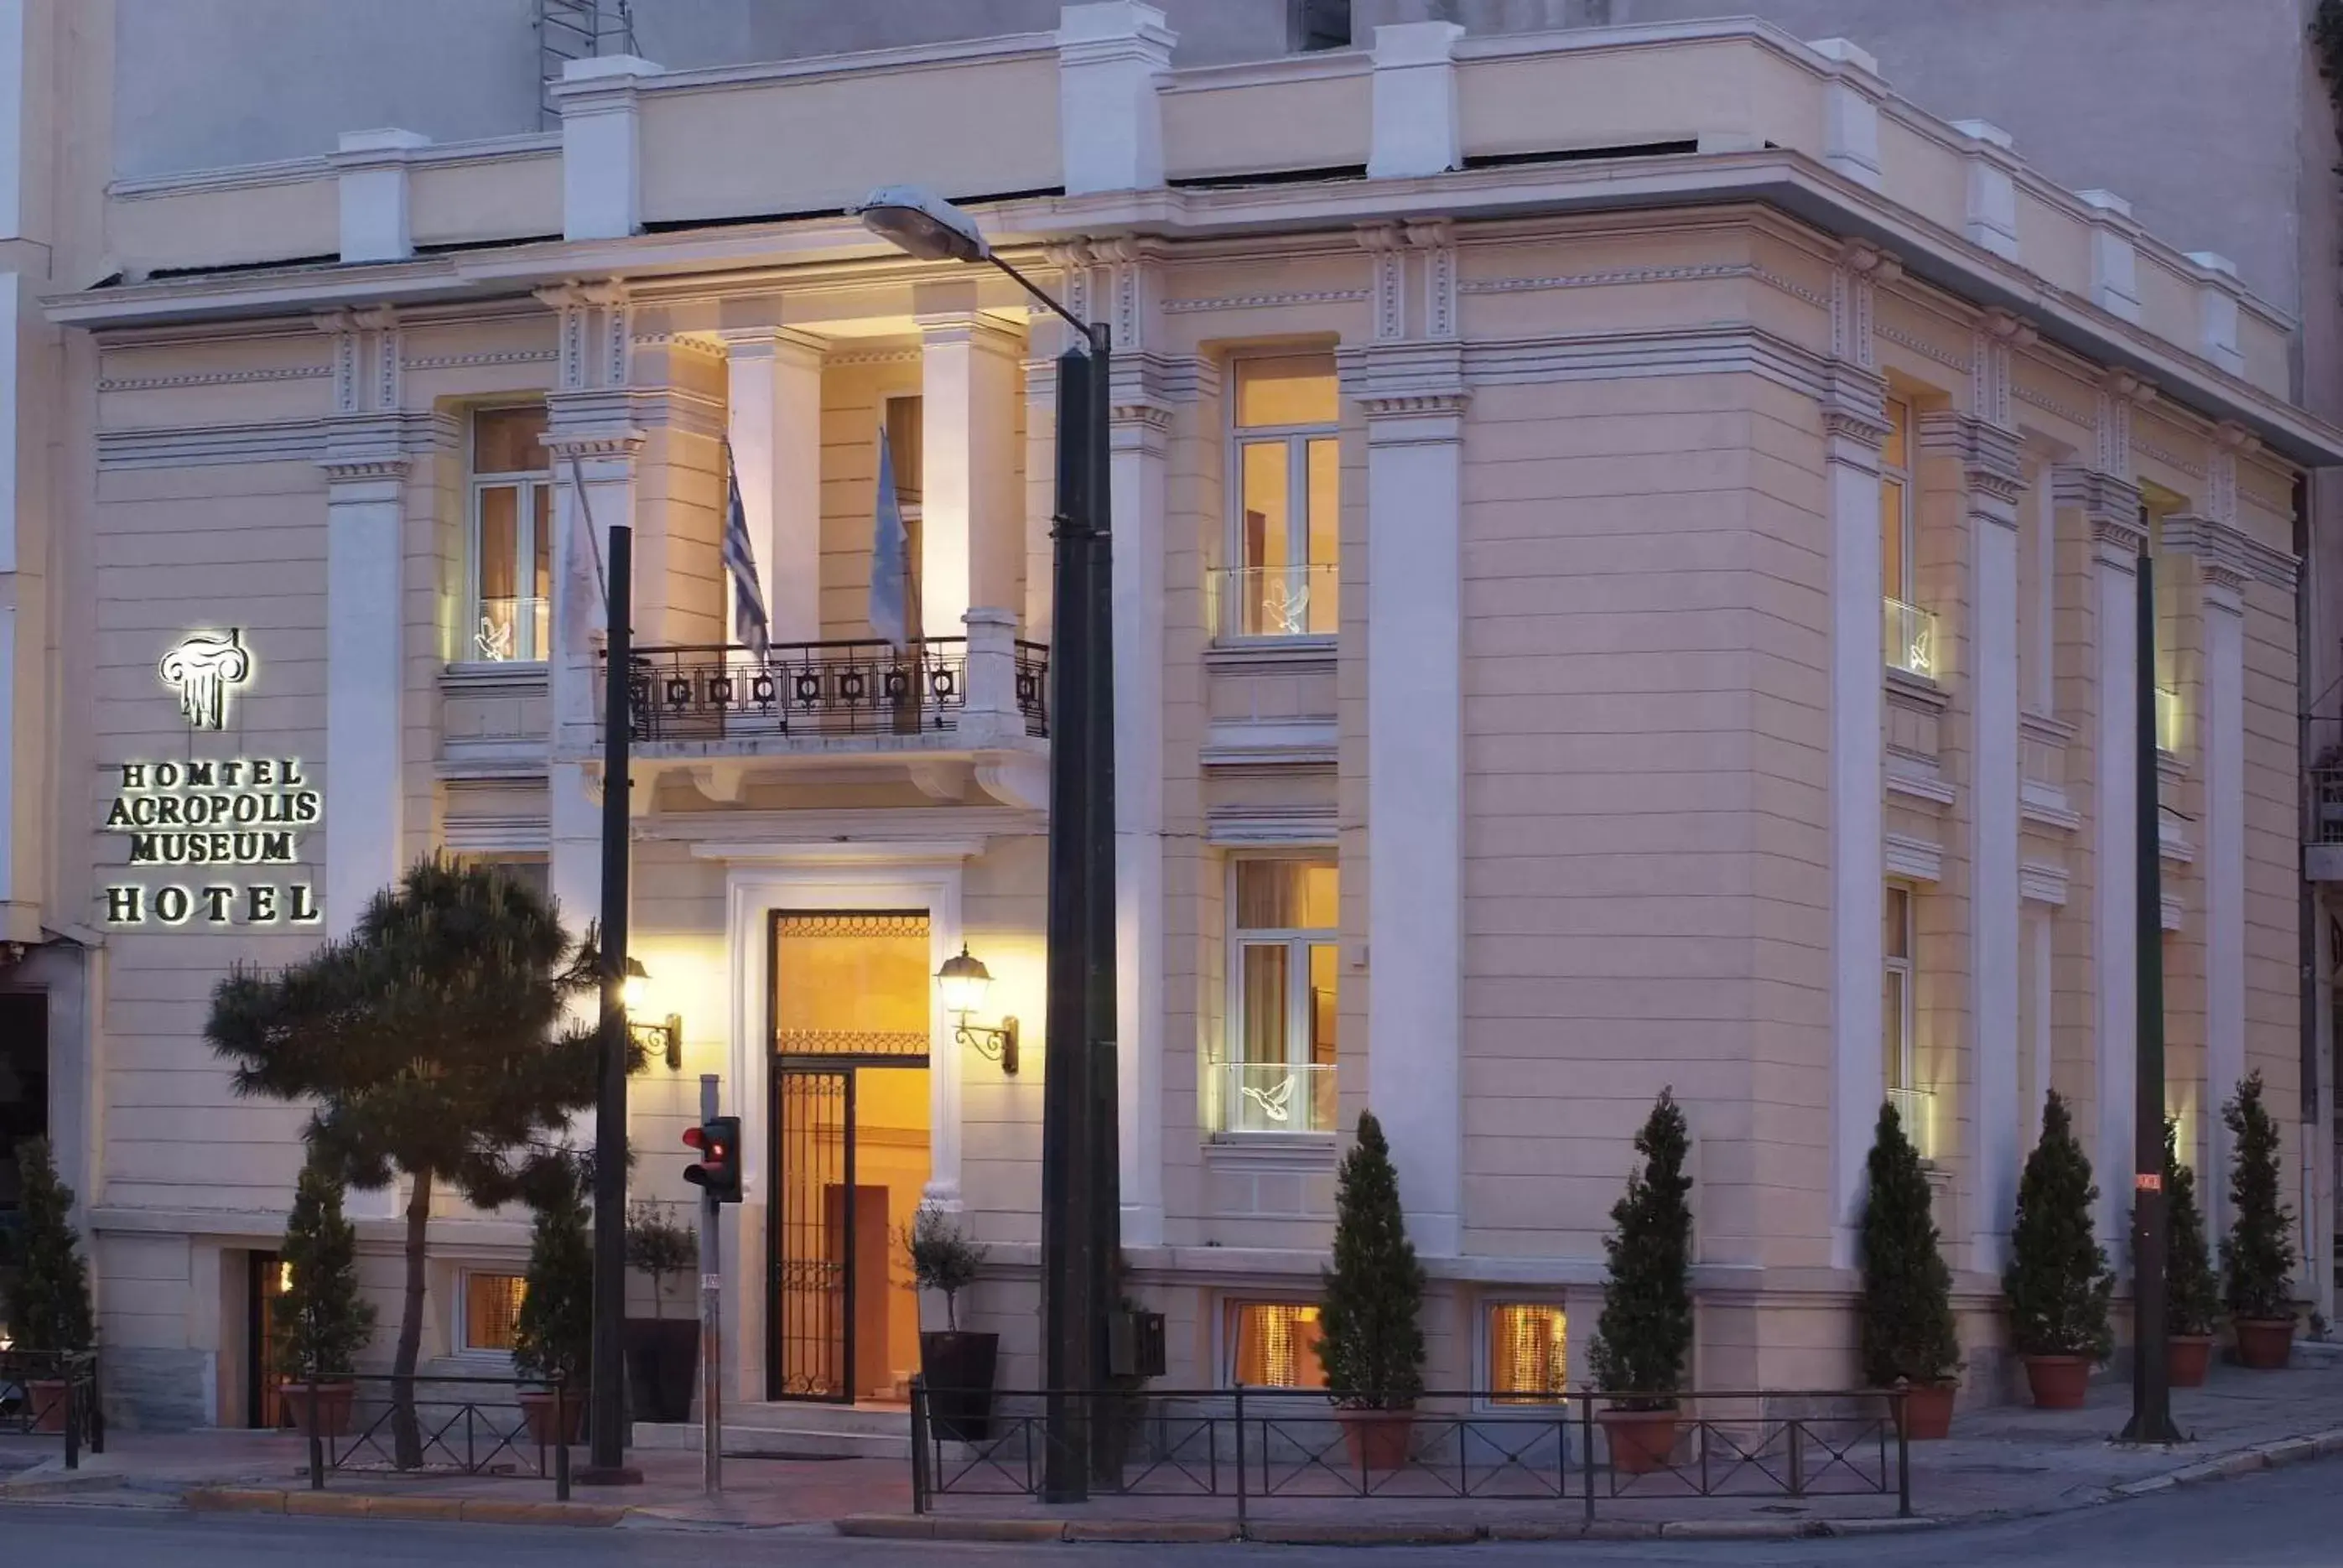 Facade/entrance, Property Building in Acropolis Museum Boutique Hotel